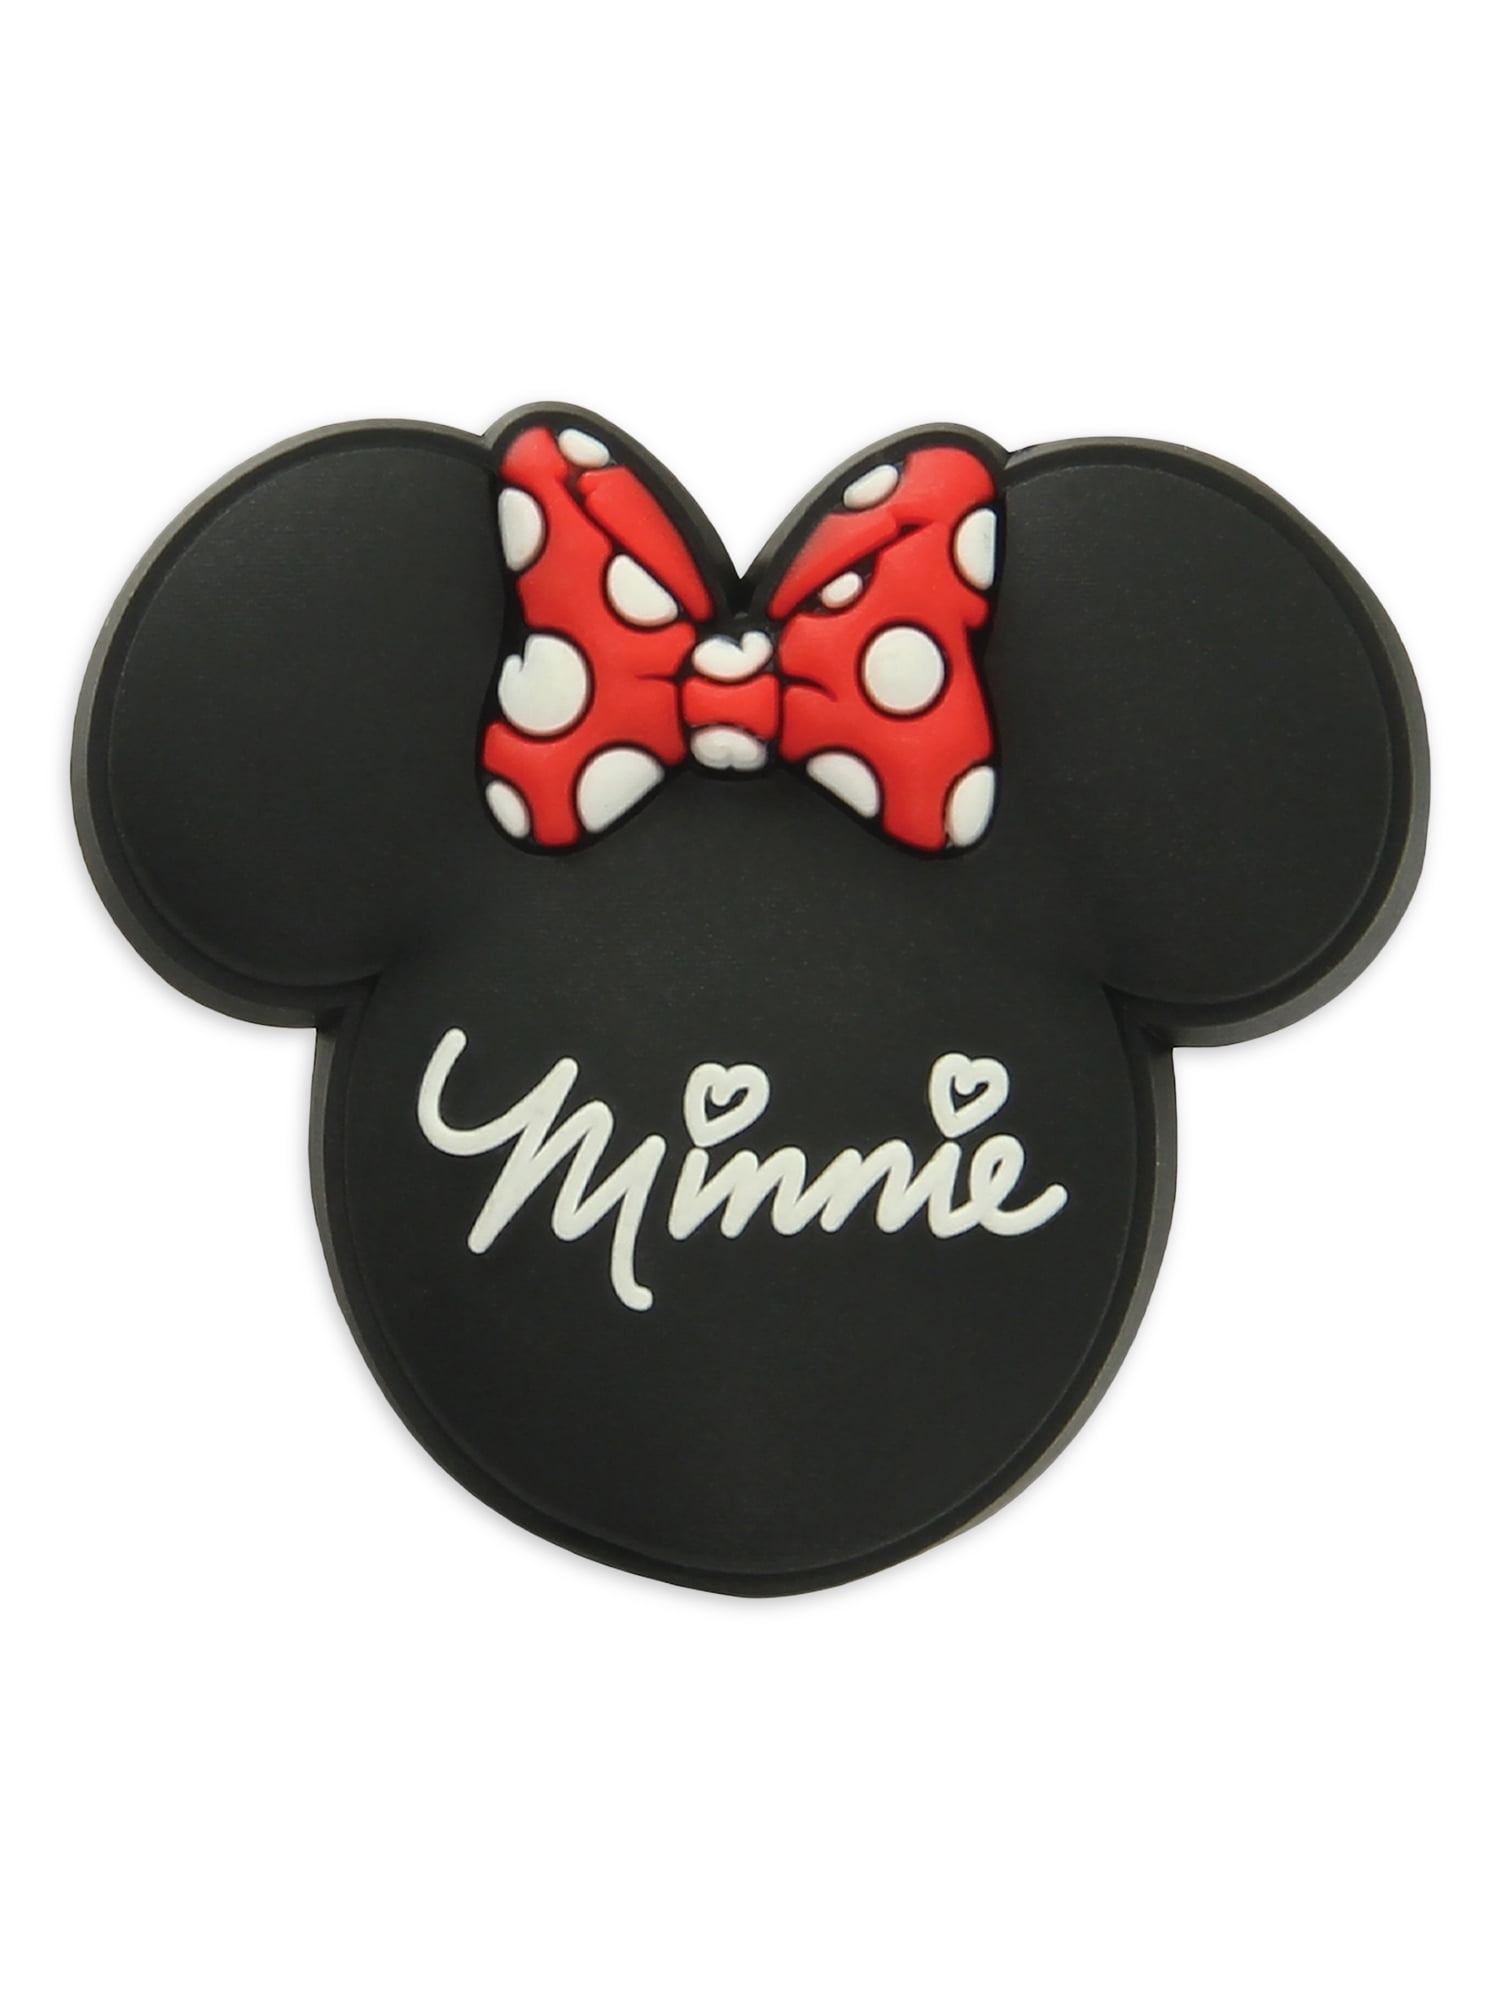 & Minnie Mouse* Fans 8 x Schuhstecker/Shoe Charms für Clogs/Crocs* für Mickey 